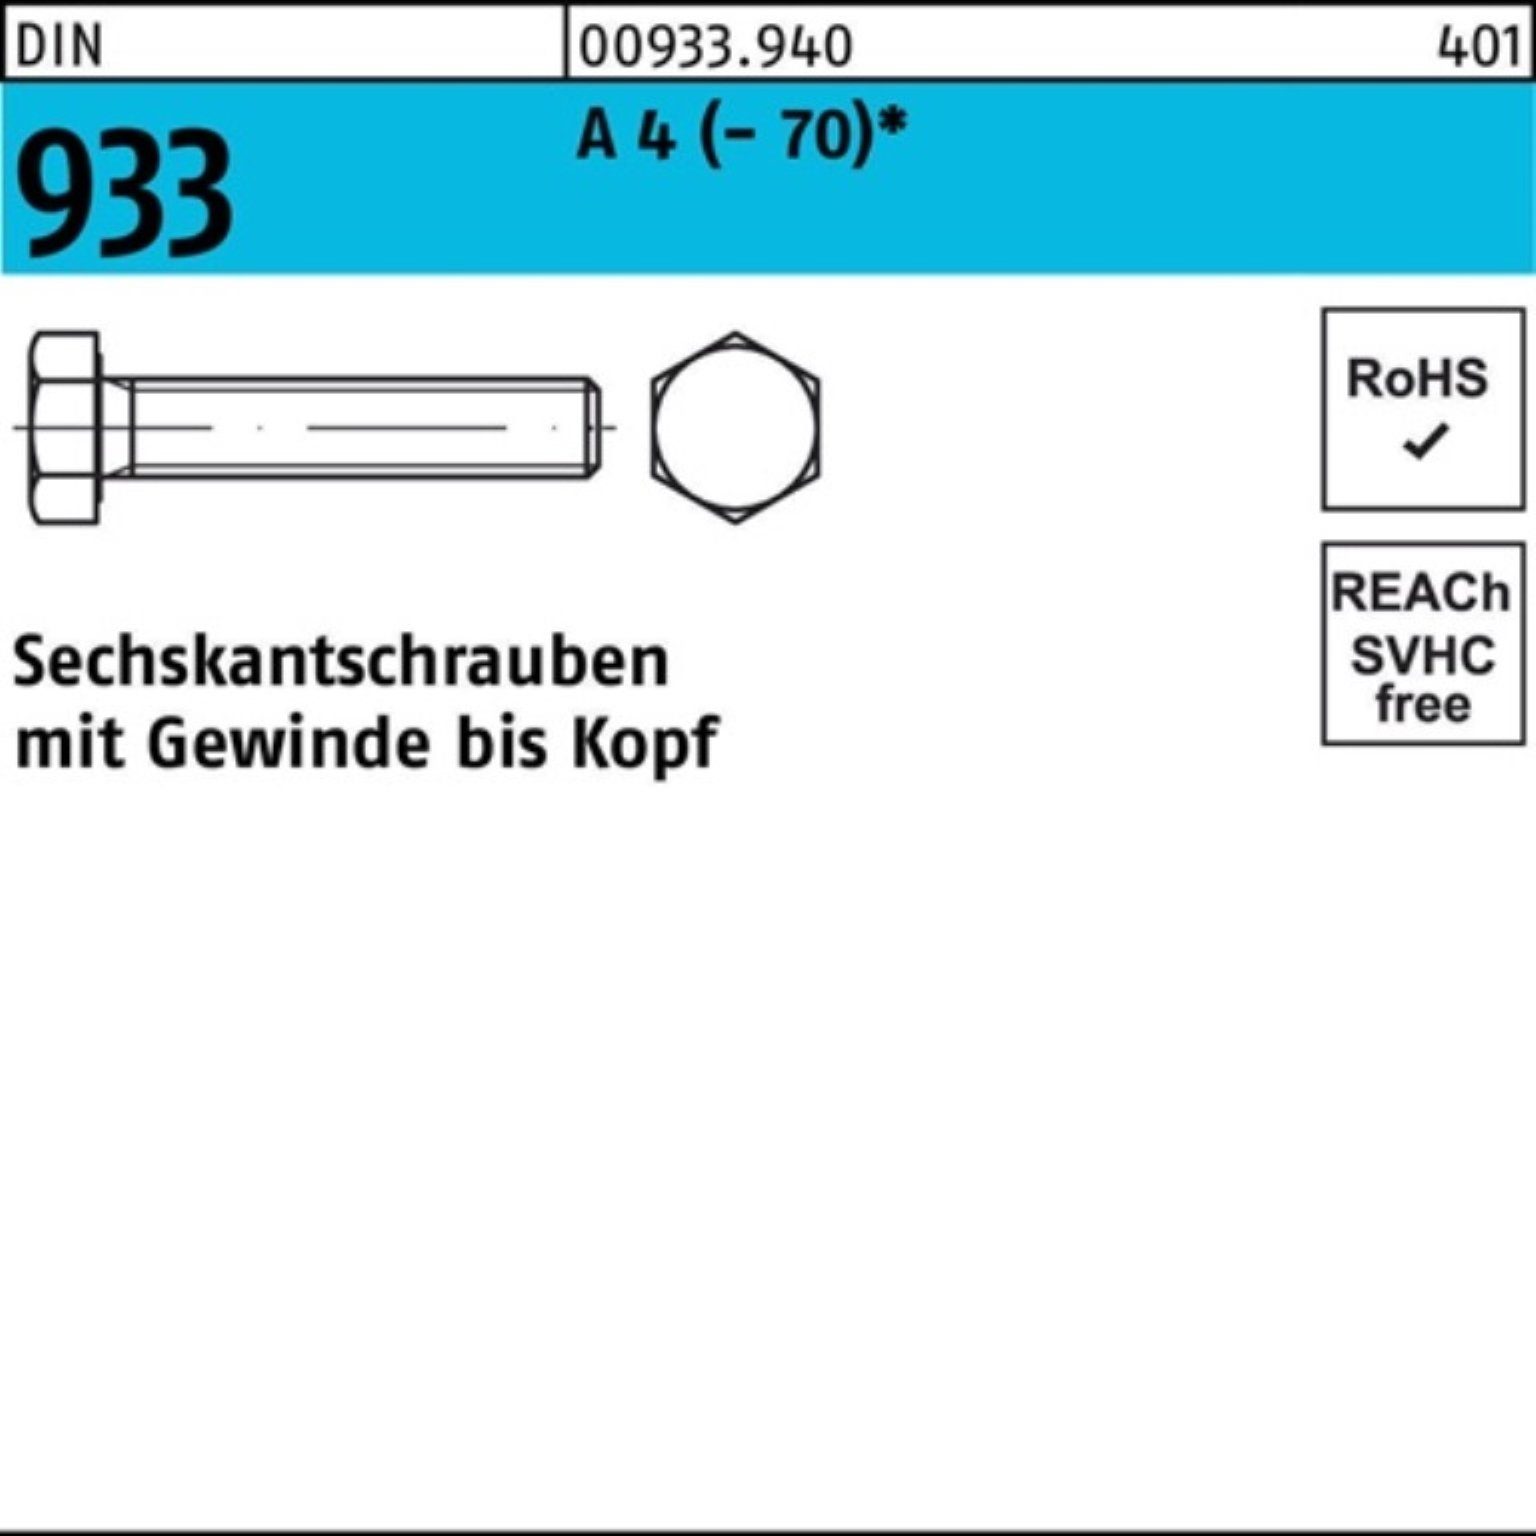 Reyher Sechskantschraube DIN A Stück Sechskantschraube 933 D (70) 4 M20x VG 100er 25 Pack 40